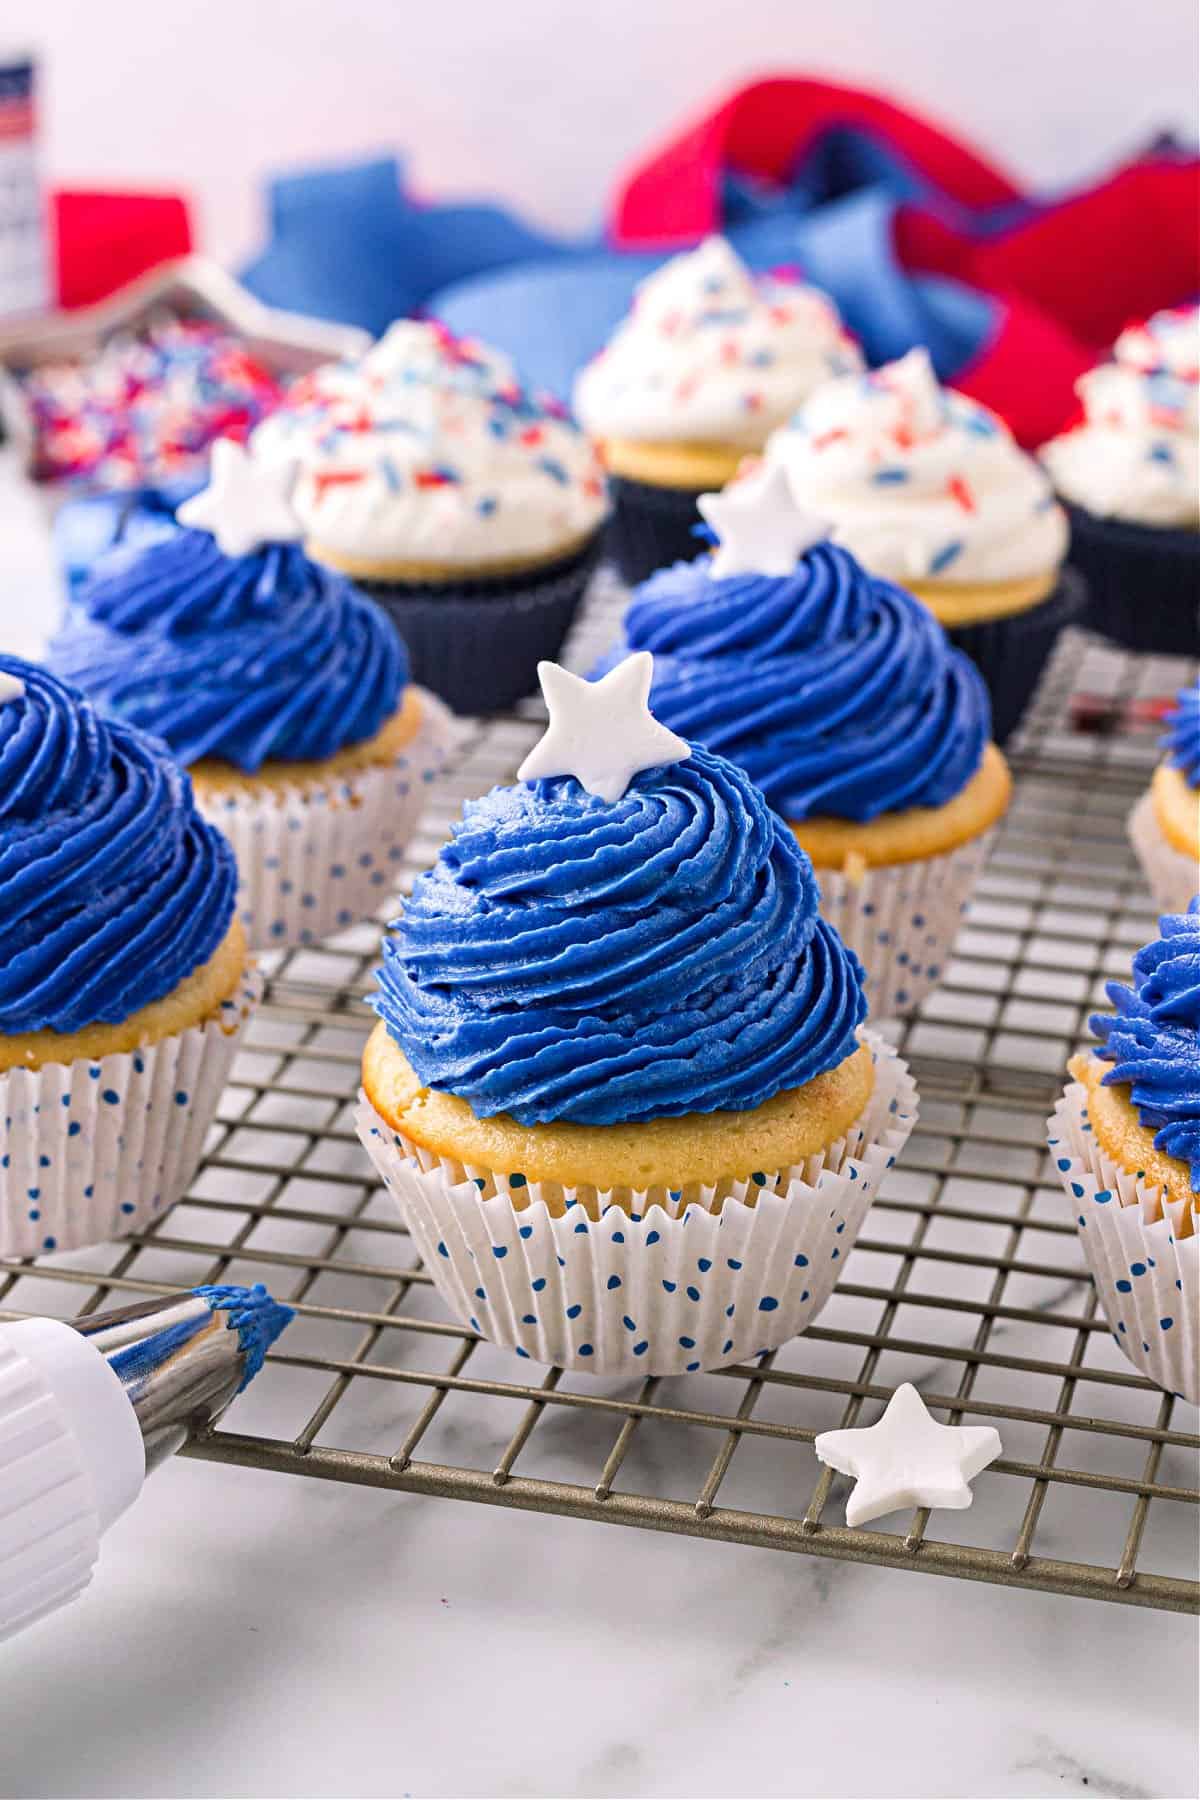 Cupcakes rouges, blancs et bleus avec pépites et M&Ms au centre